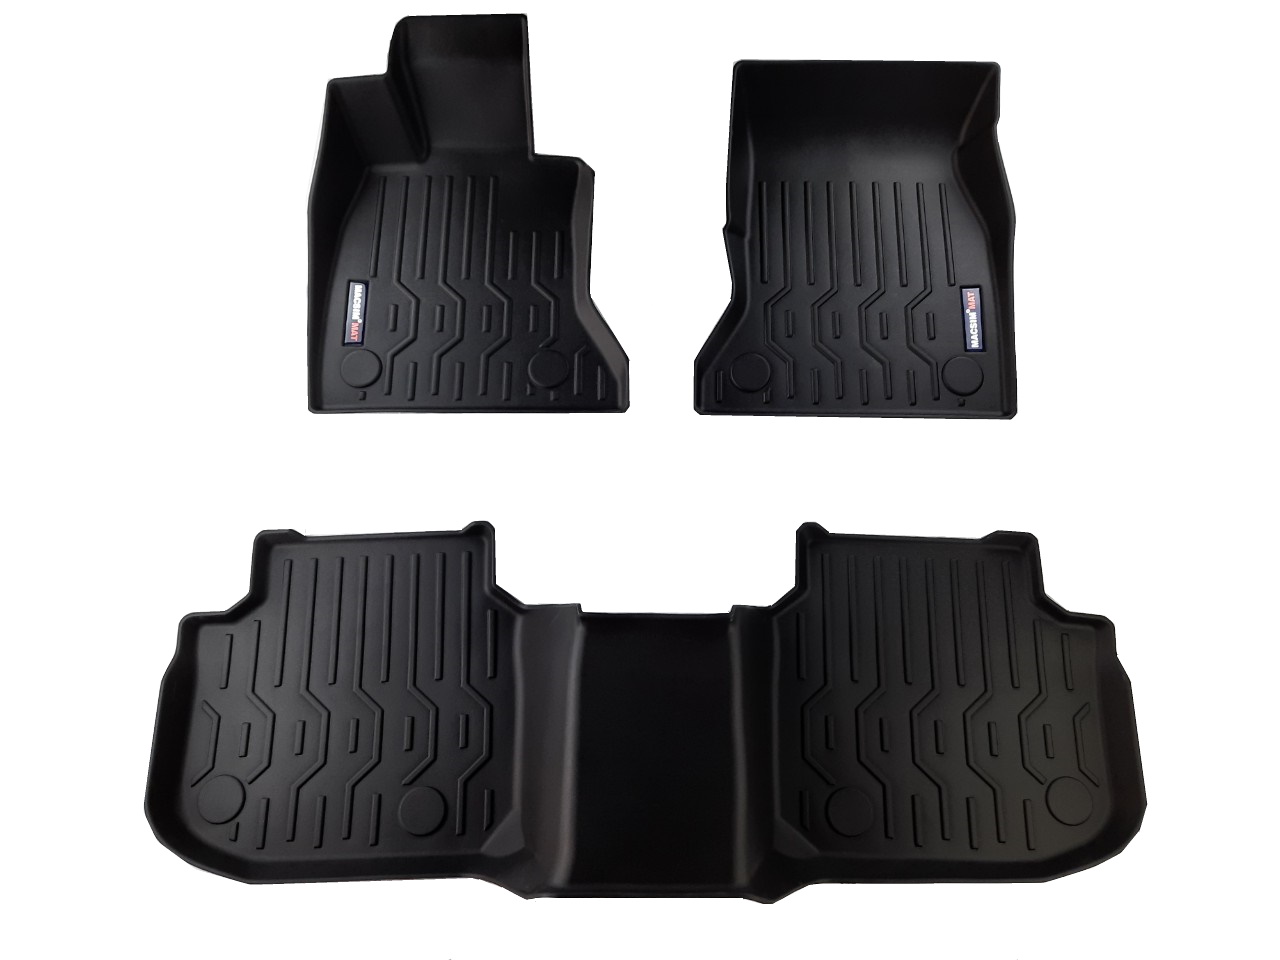 Thảm lót sàn xe ô tô dành cho BMW 5 series 2013 Nhãn hiệu Macsim chất liệu nhựa TPV cao cấp màu đen